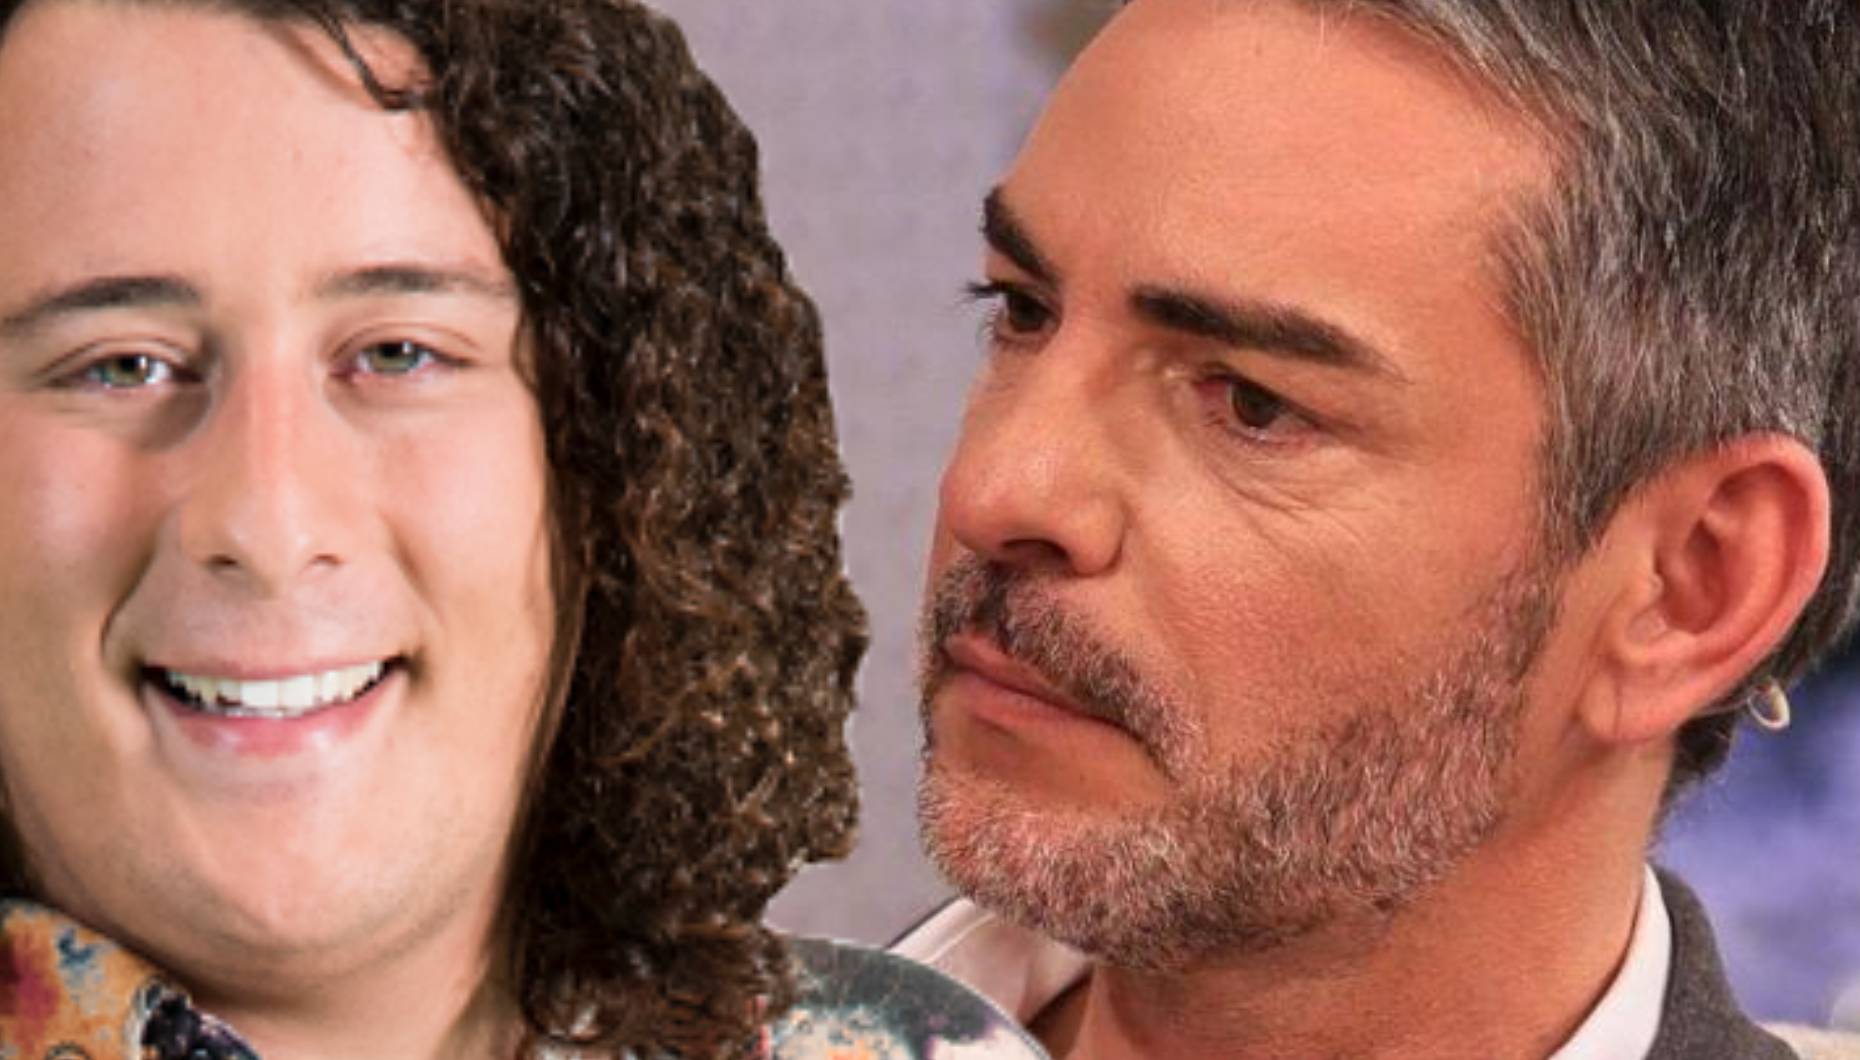 “Big Brother - Desafio Final”: André Filipe lança novas farpas a Cláudio Ramos